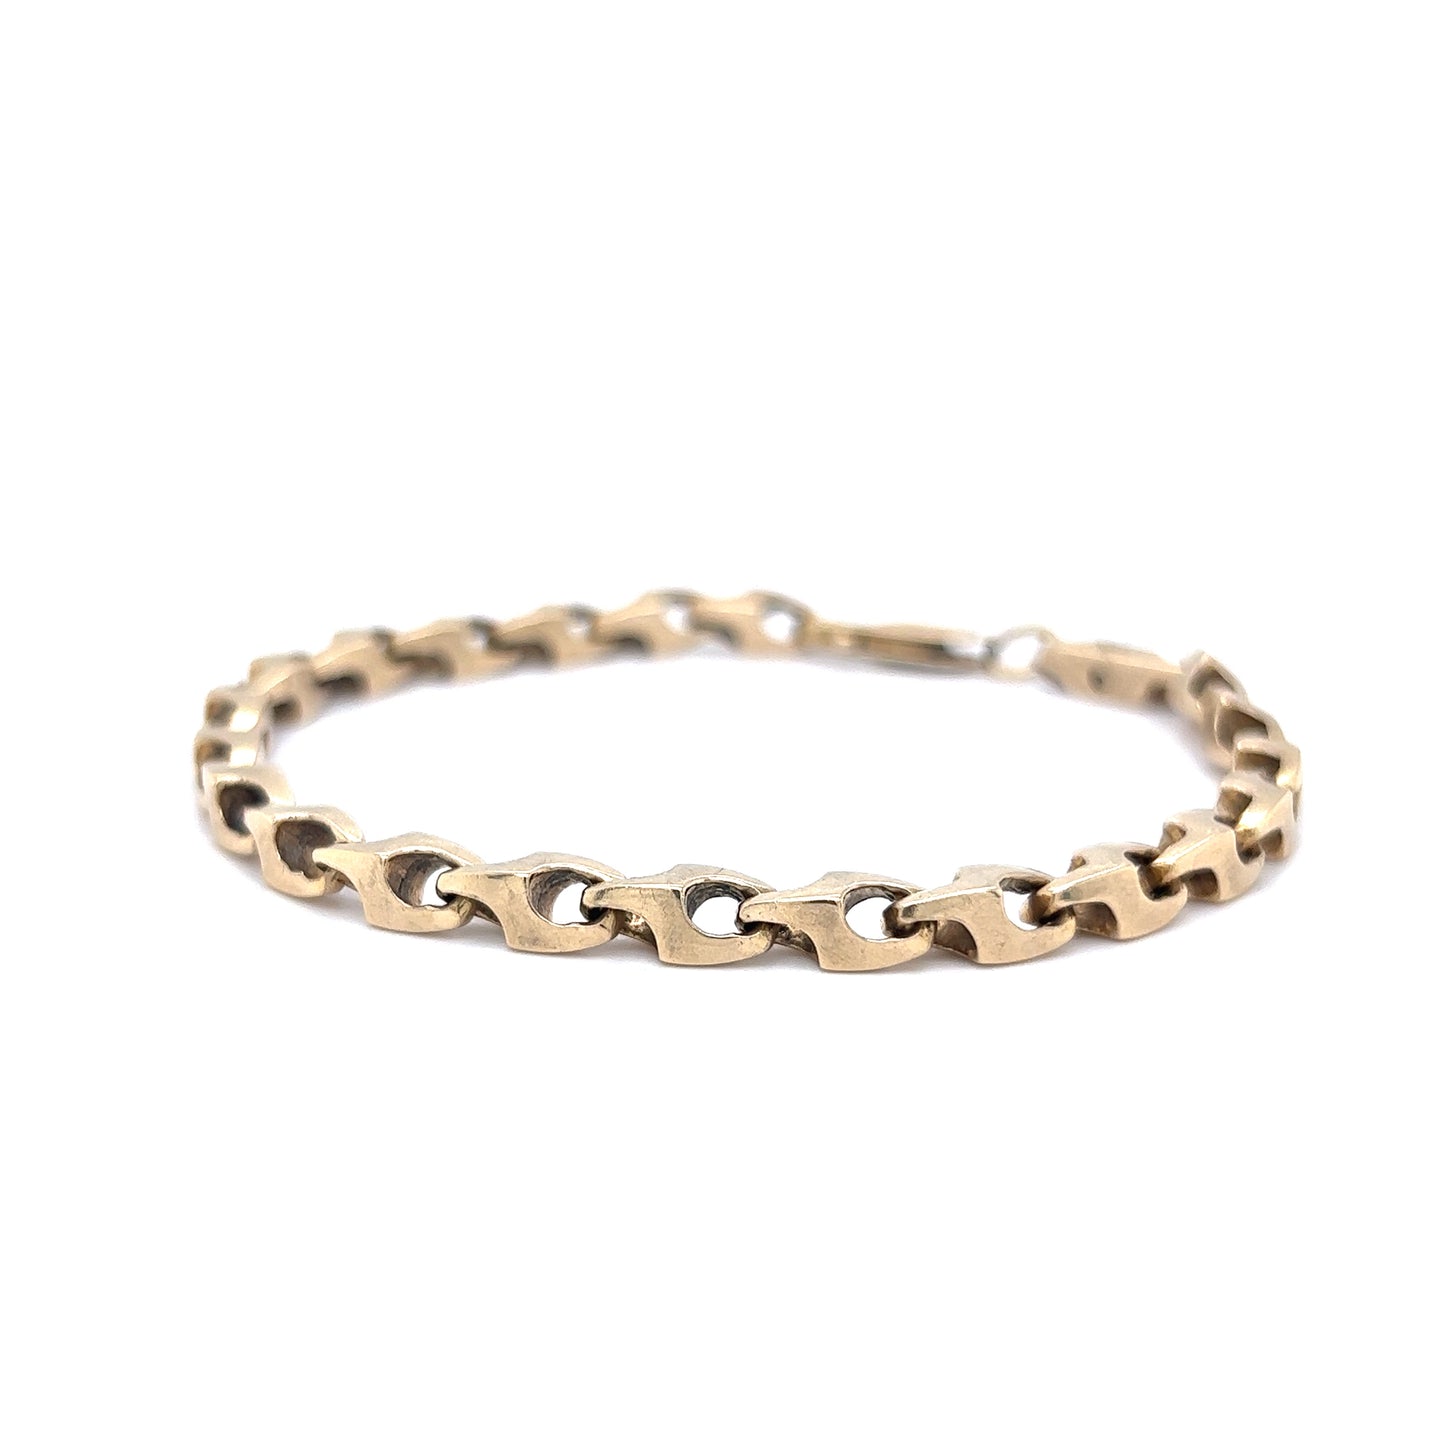 Men's Geometric Link Bracelet in 14k Yellow Gold